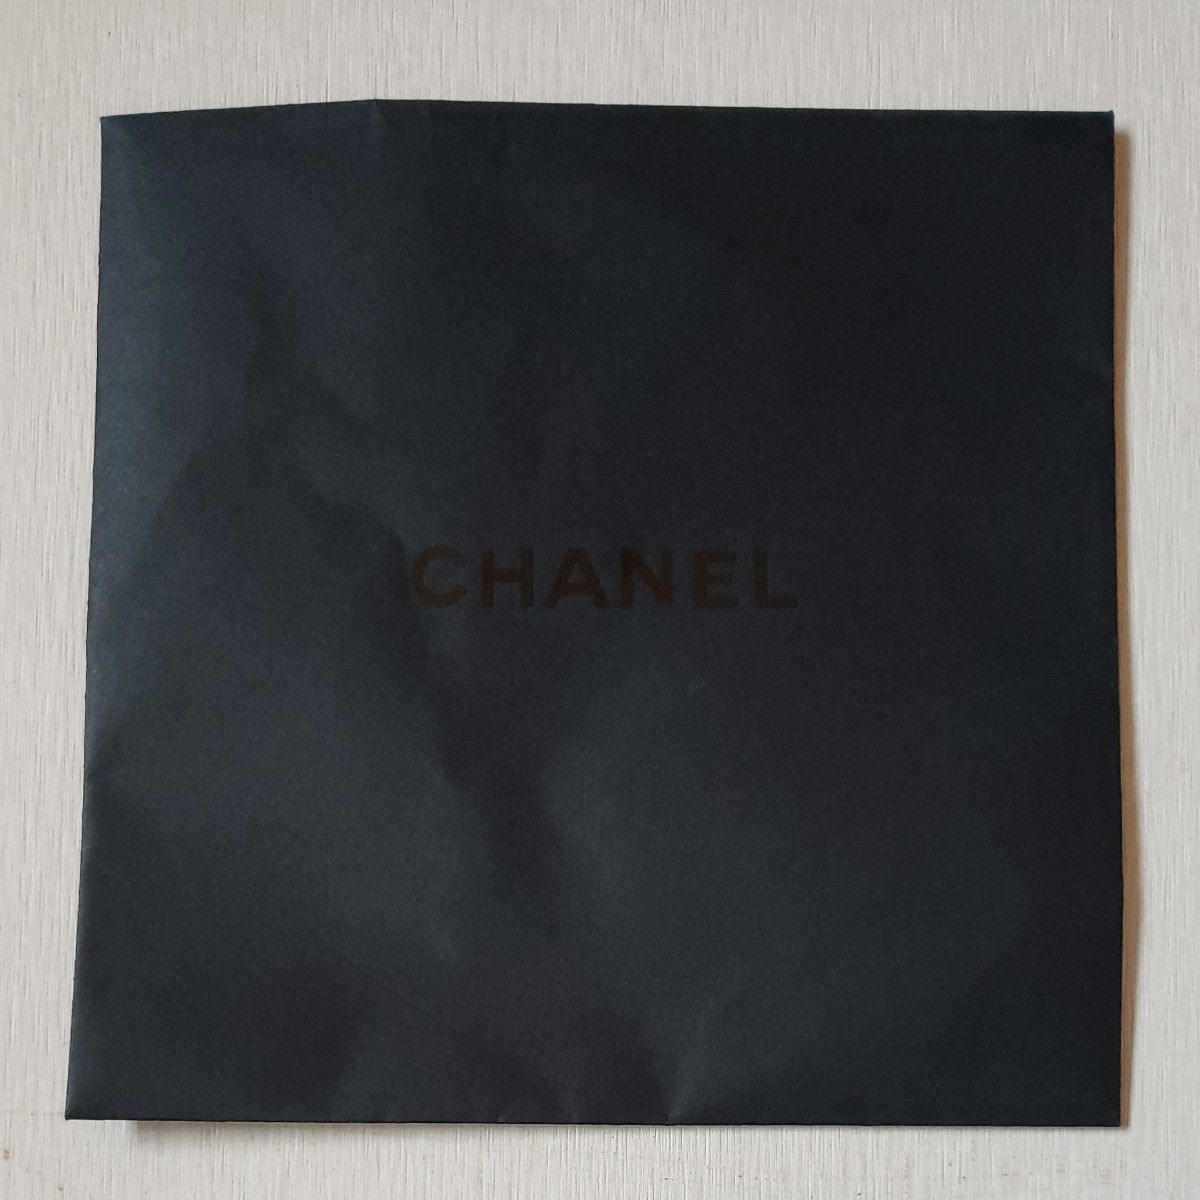 CHANEL紙袋長期保管 シャネル 内袋 ブラック 付属品